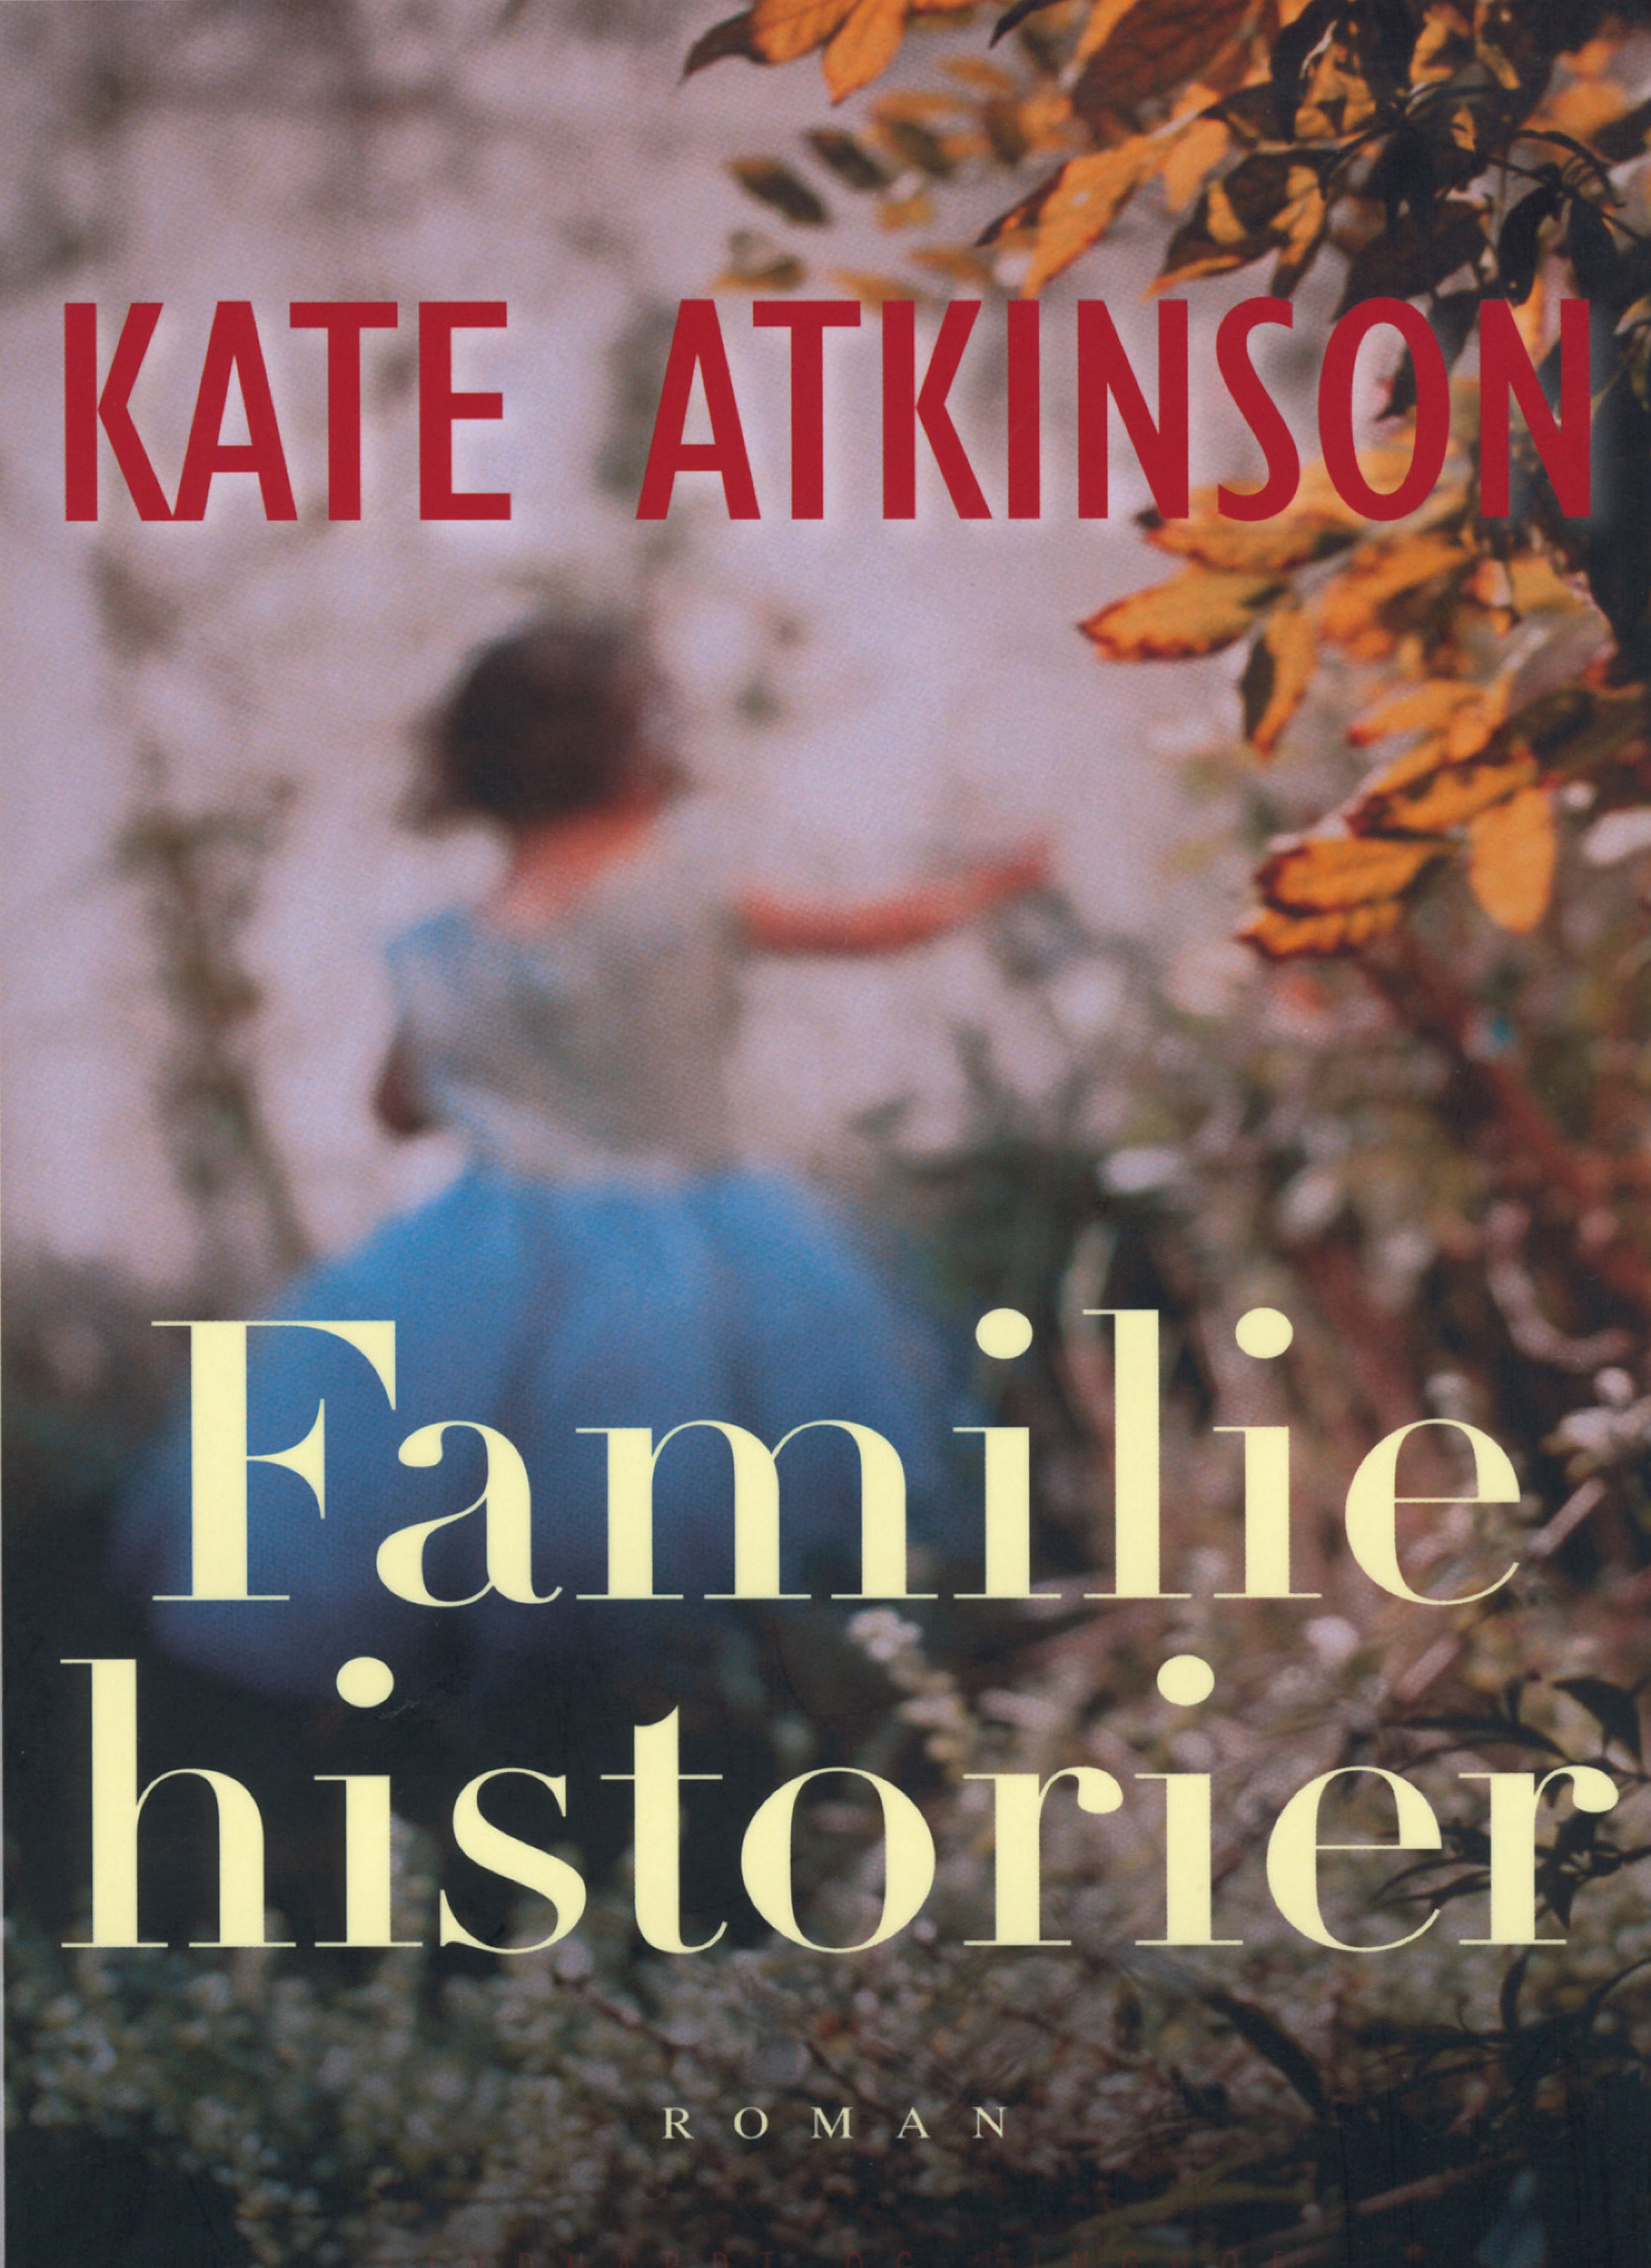 Familiehistorier, ljudbok av Kate Atkinson